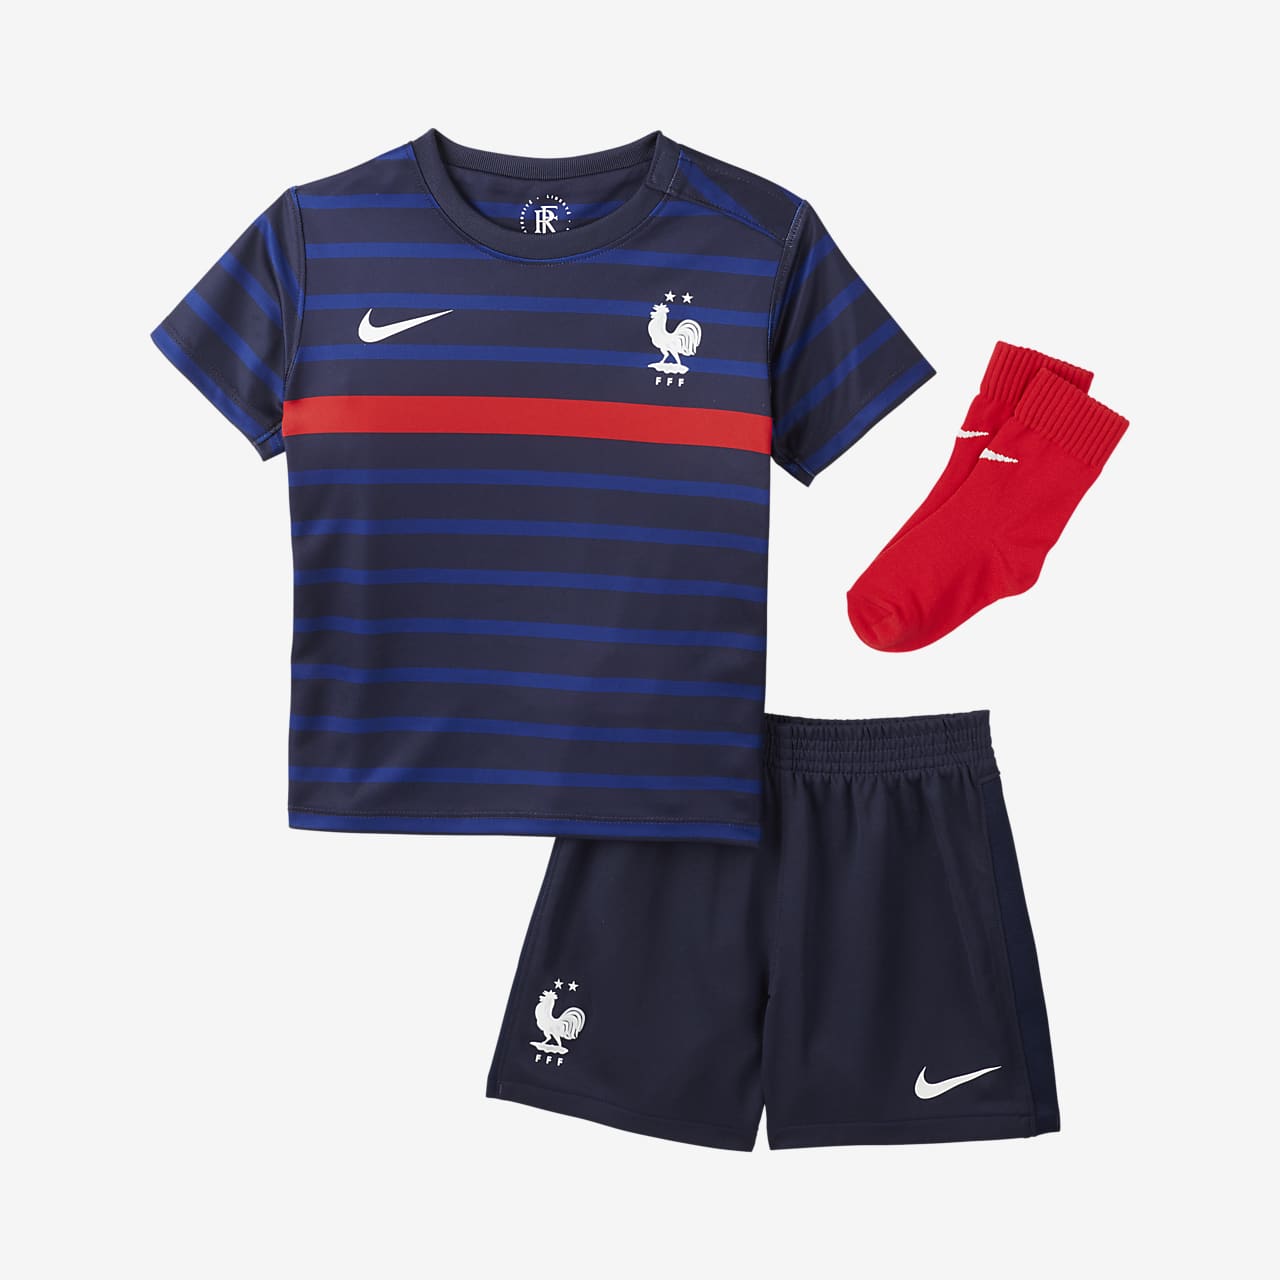 Toddler Football Kit. Nike LU